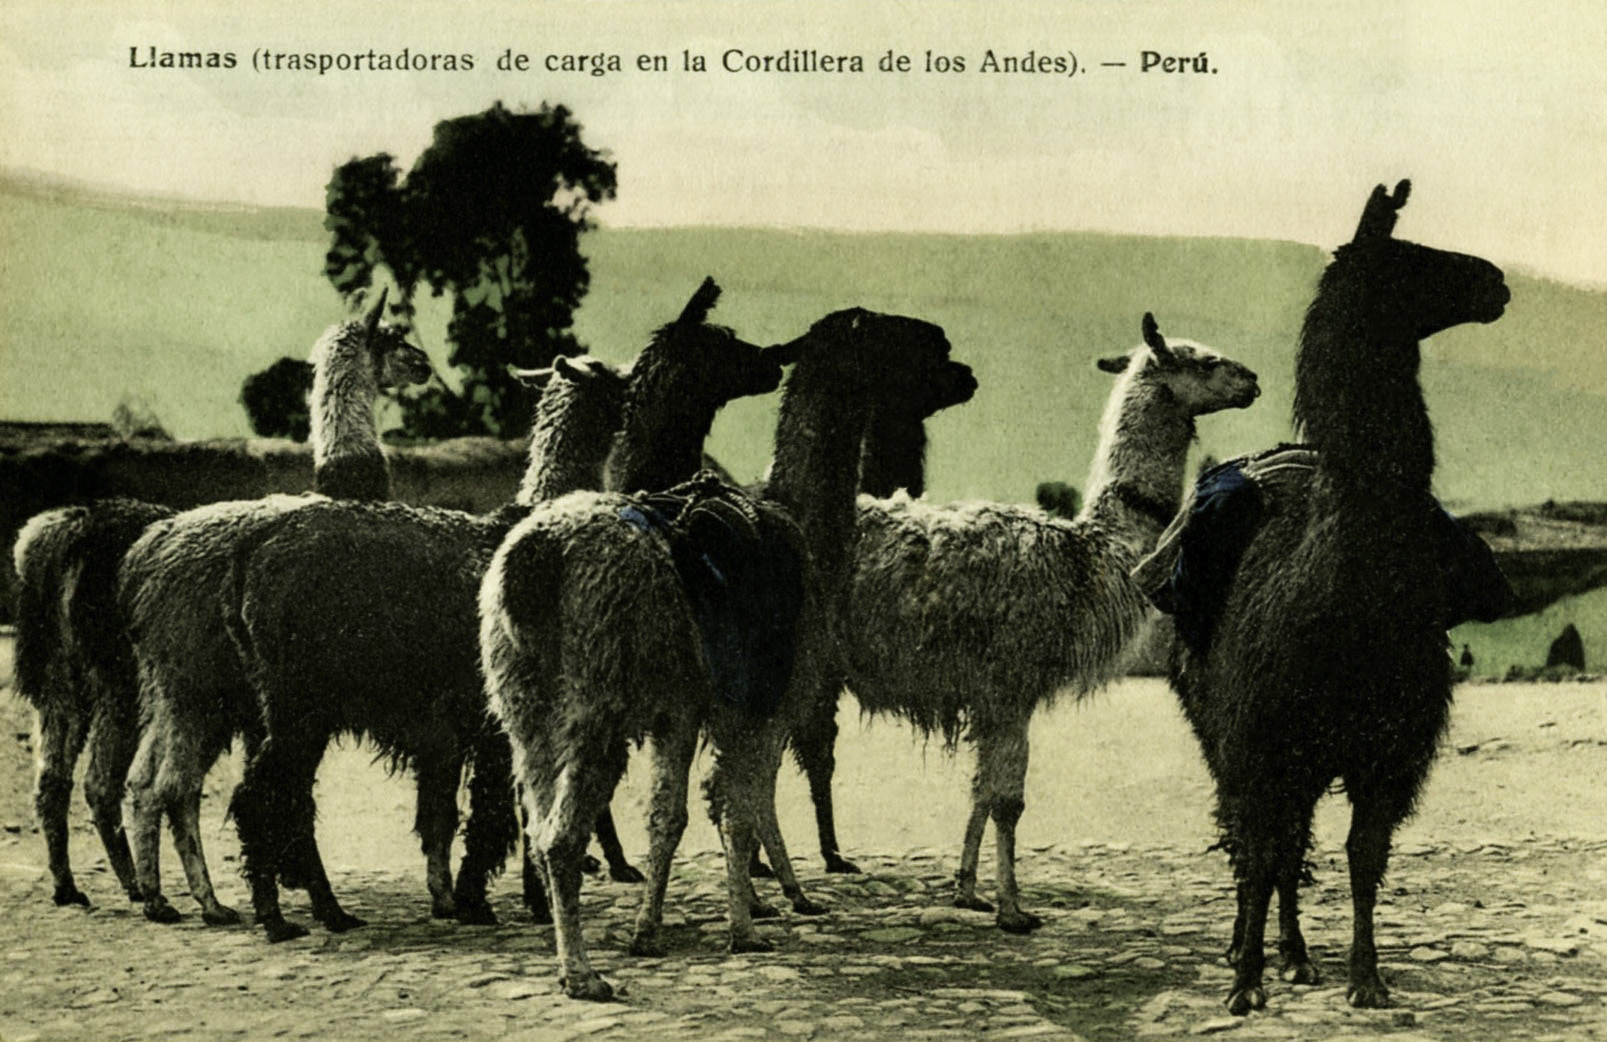 South American Postcard Collectio